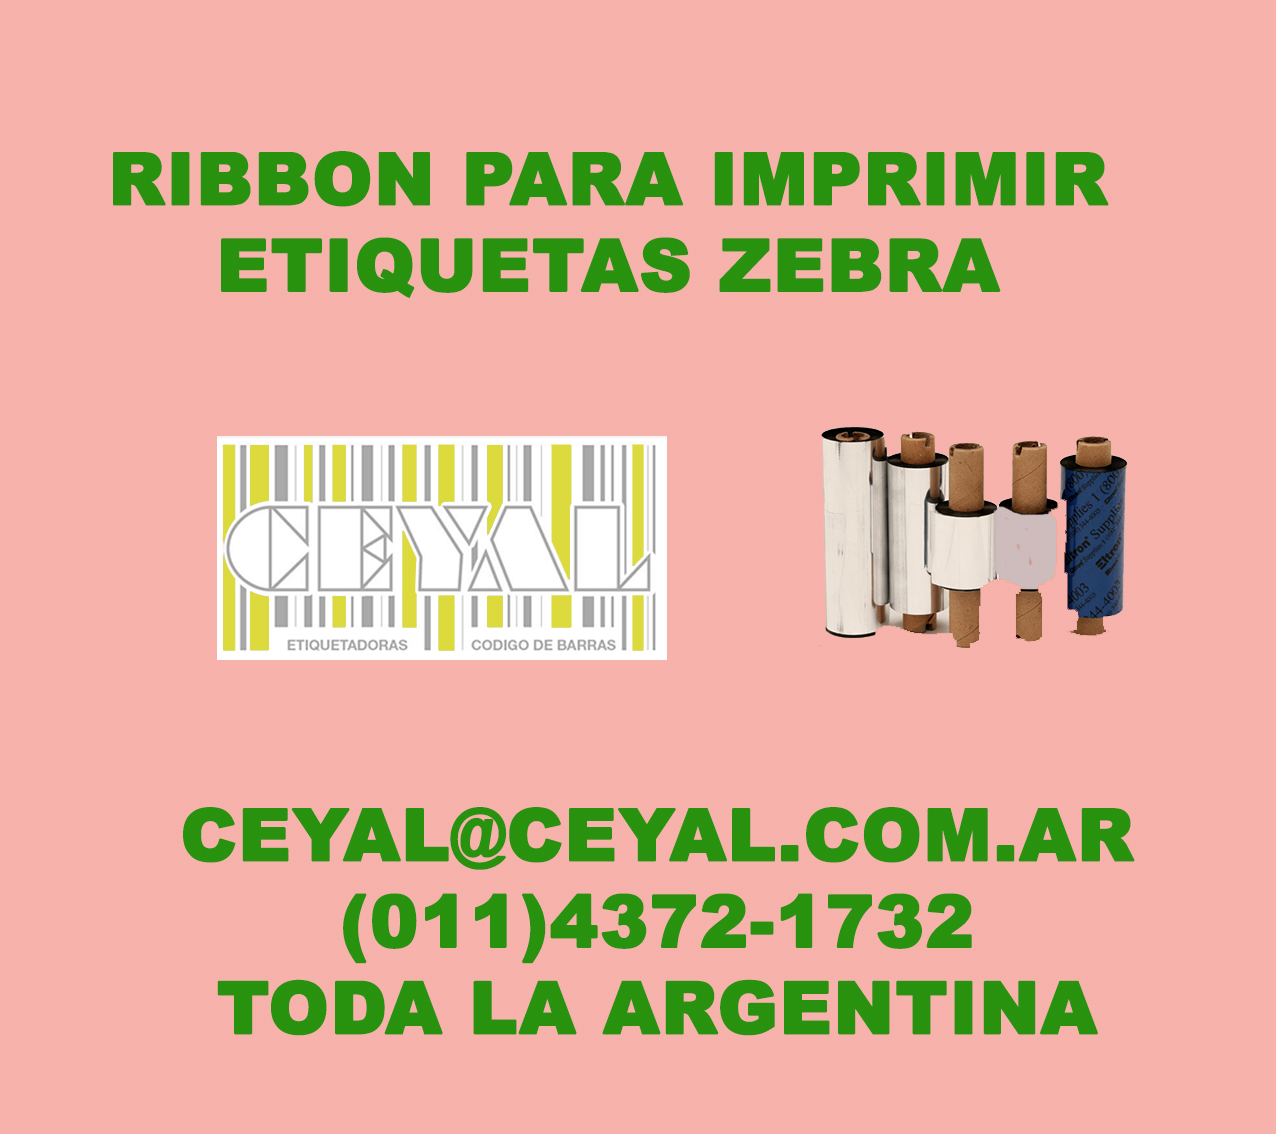 Fabrica de etiquetas autoadhesivas Avios textiles Argentina